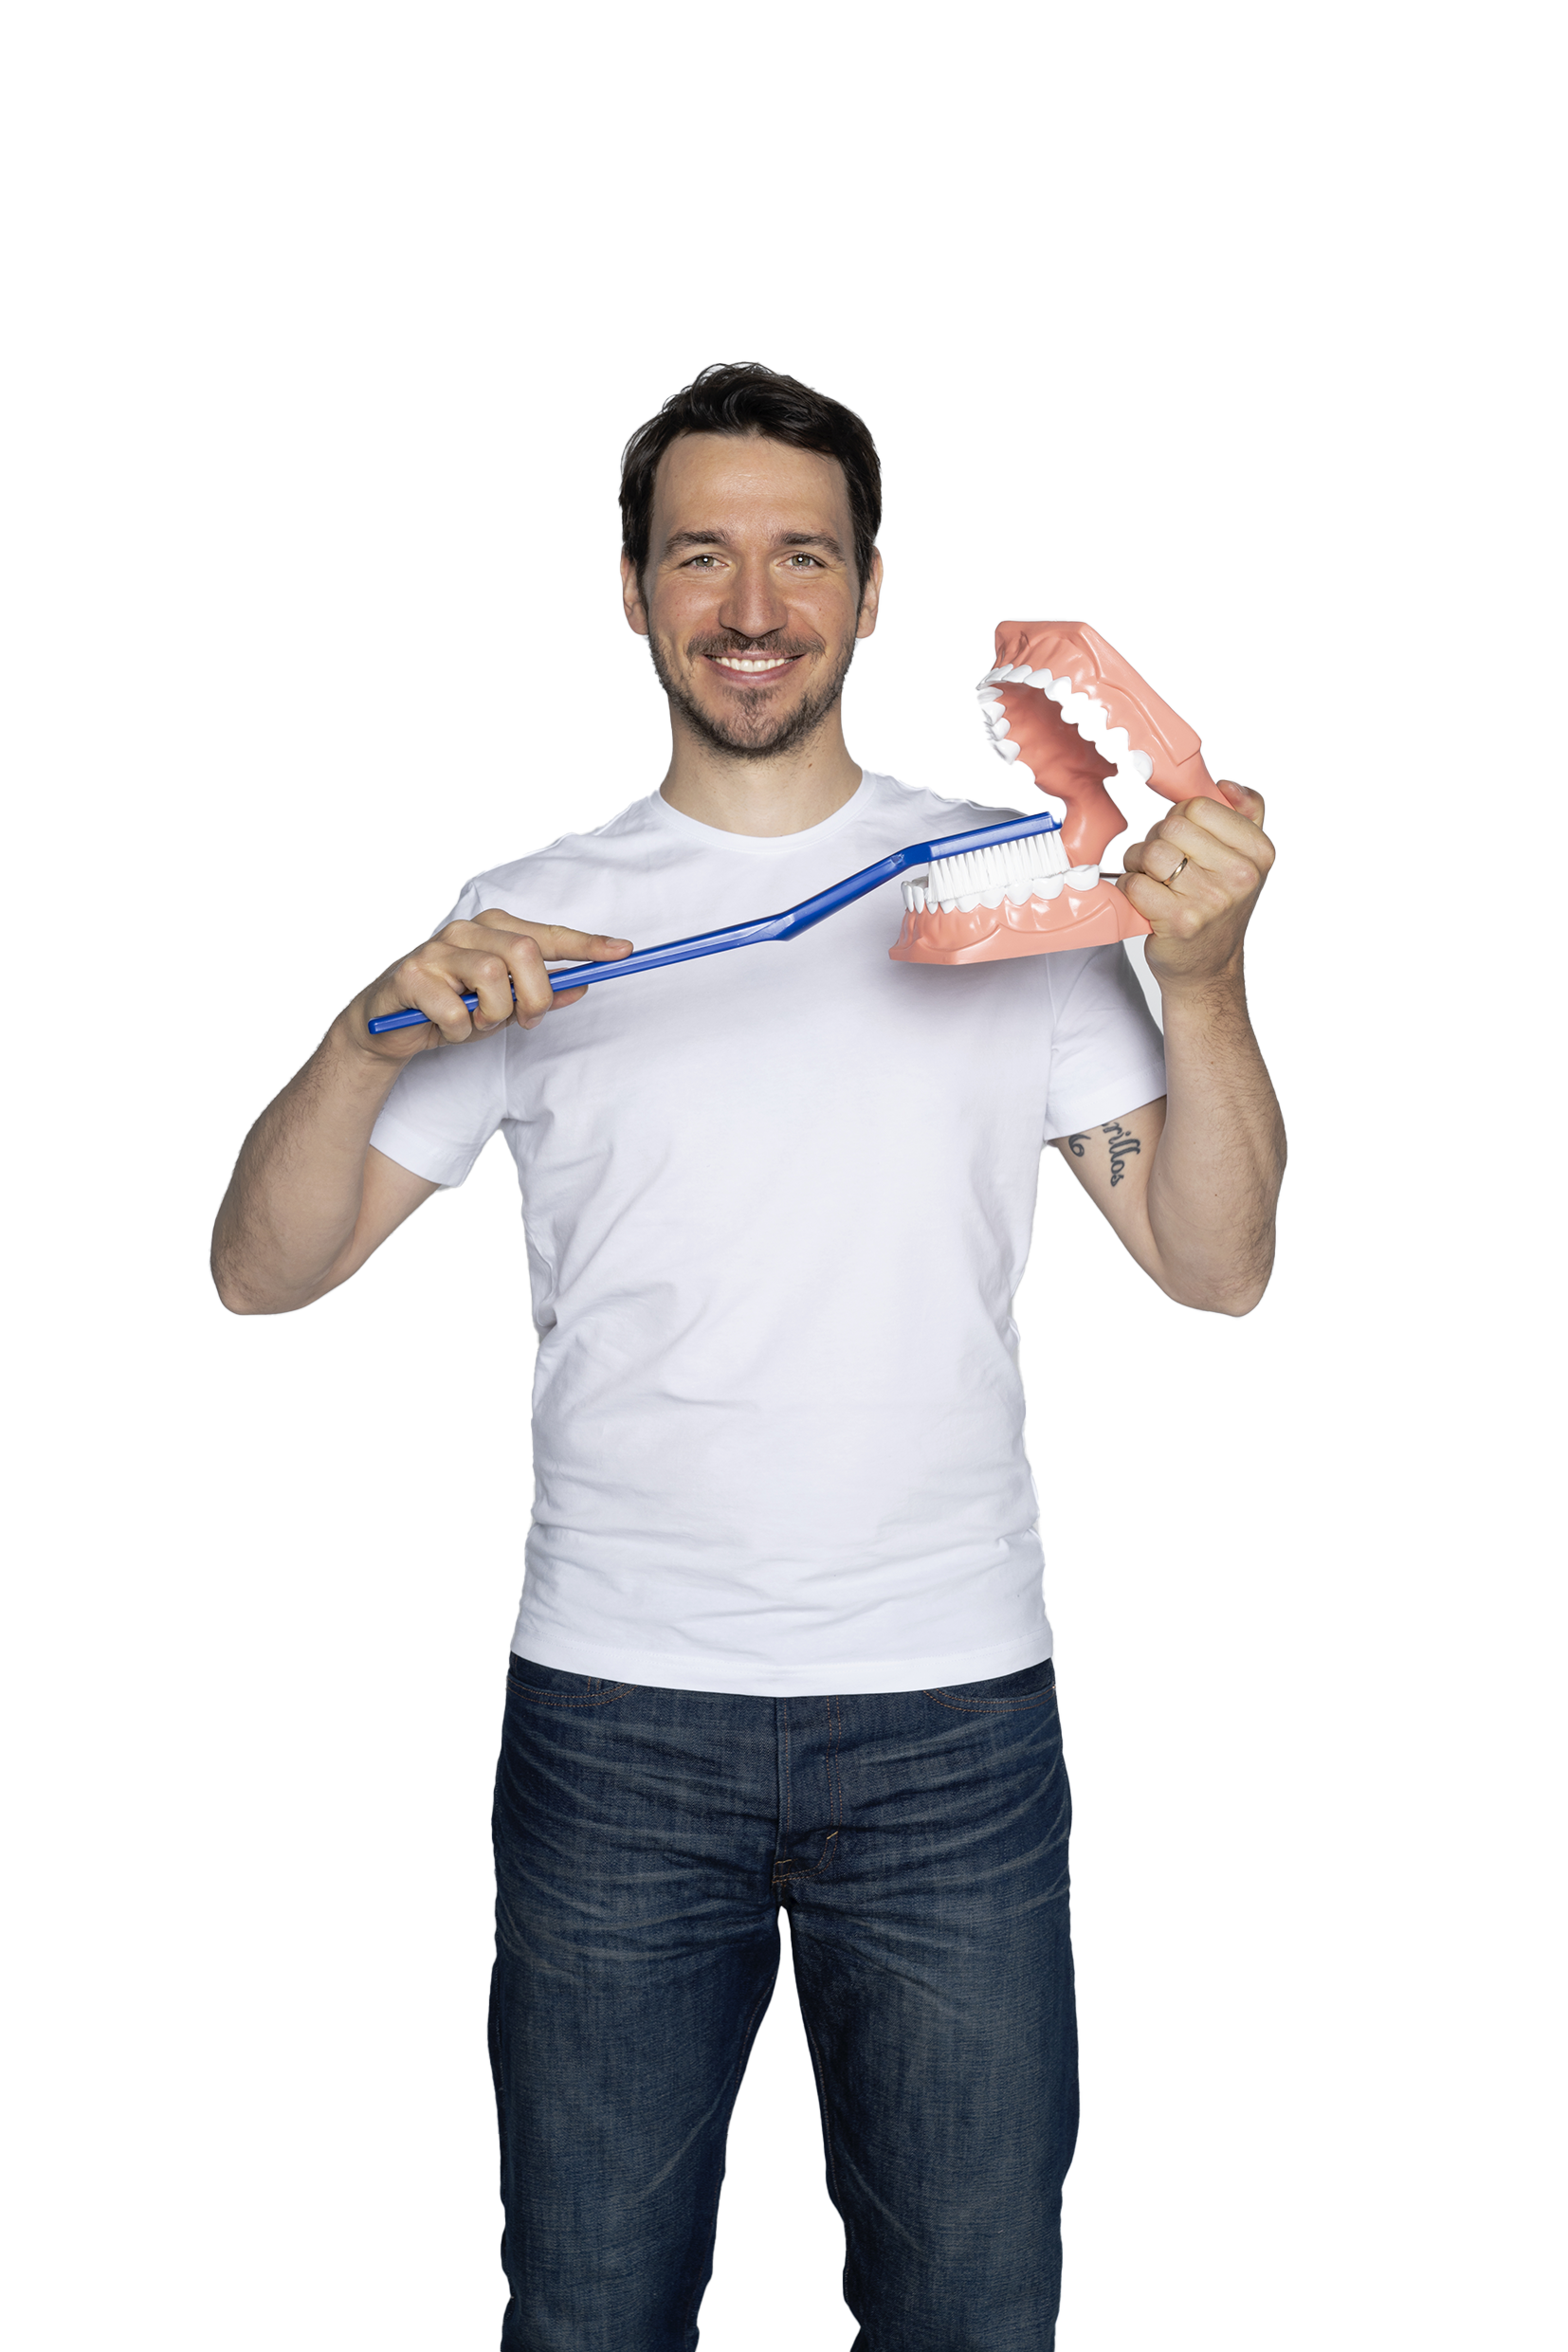 mann mit grosser zahnbuerste putzt ein grosses plastikgebiss